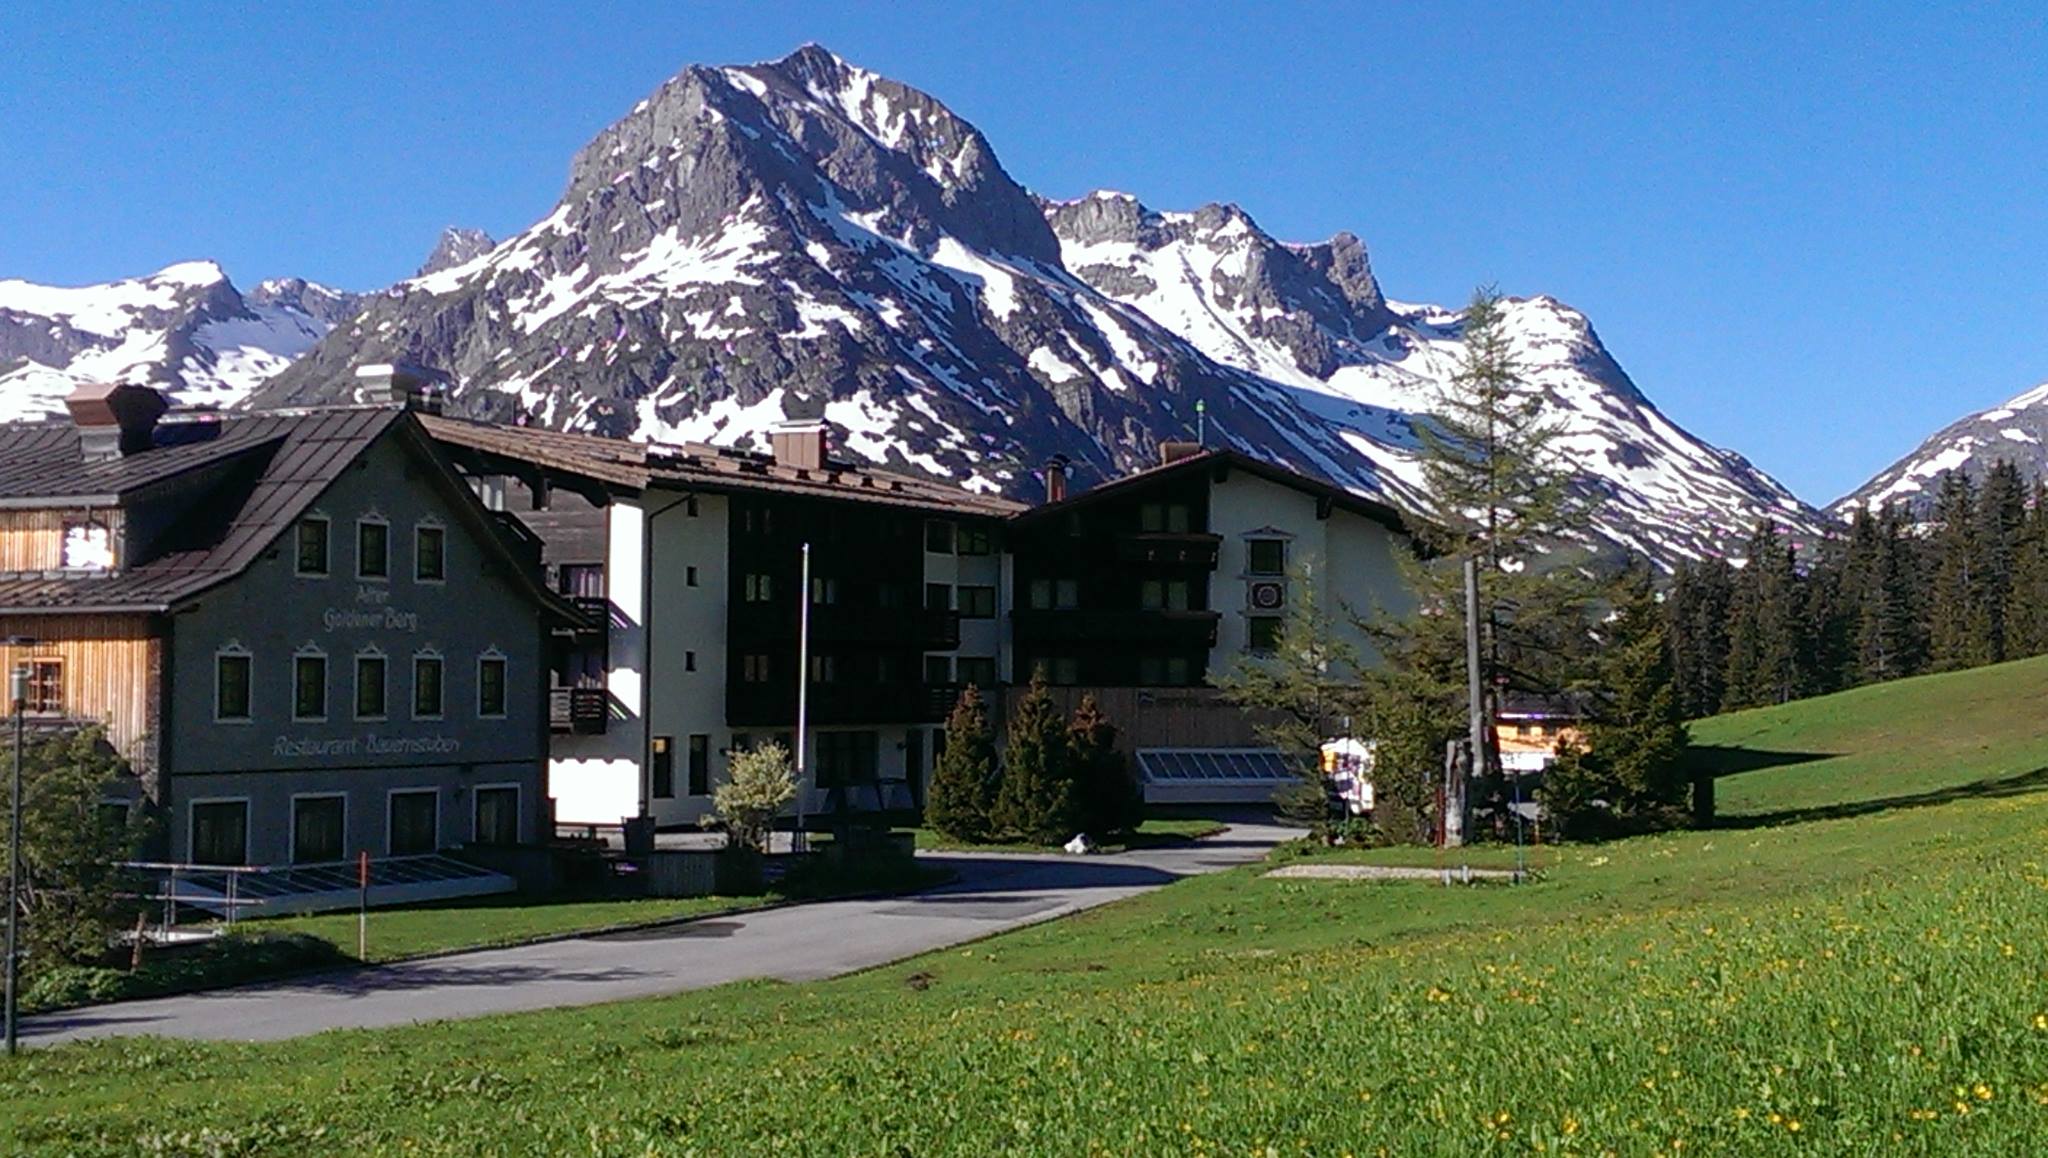 Hotel Golderner Berg